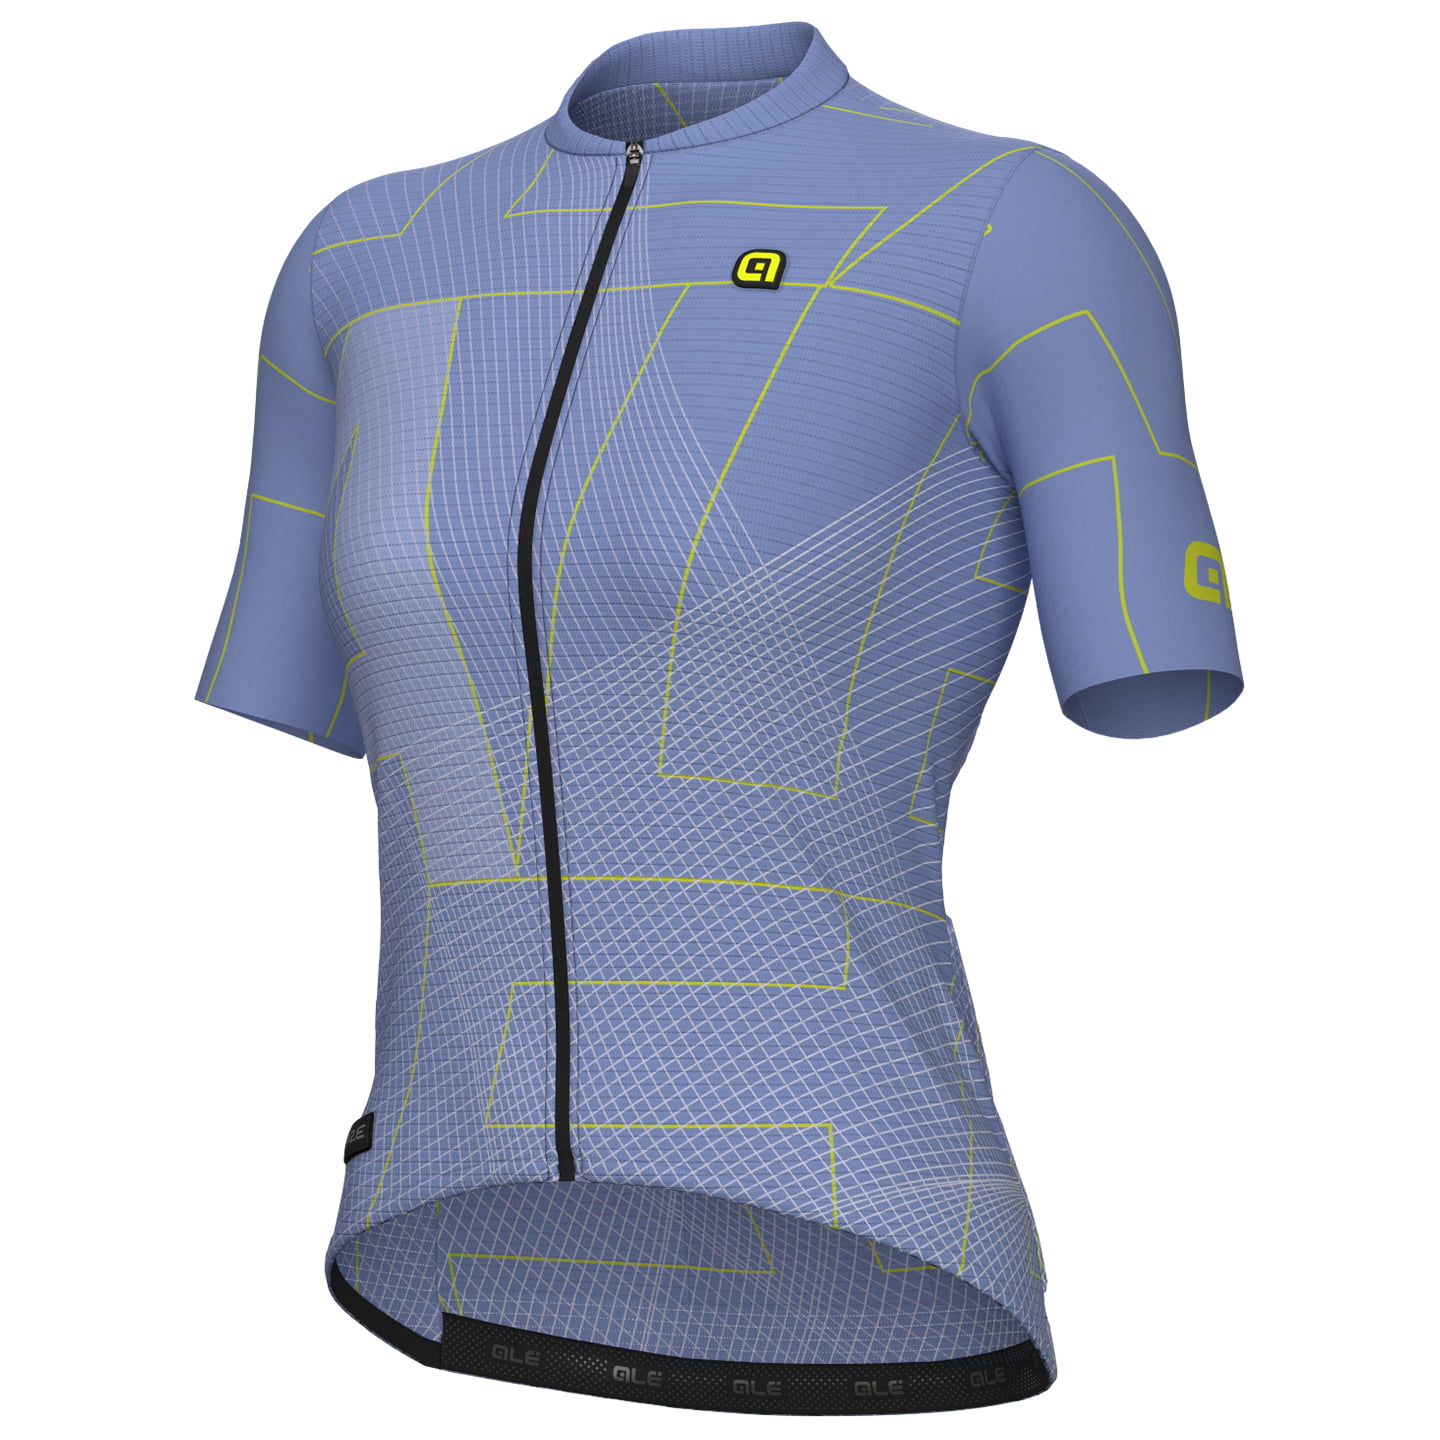 ALE Women Short Sleeve Jersey Synergy Women’s Short Sleeve Jersey, size M, Cycling jersey, Cycle clothing